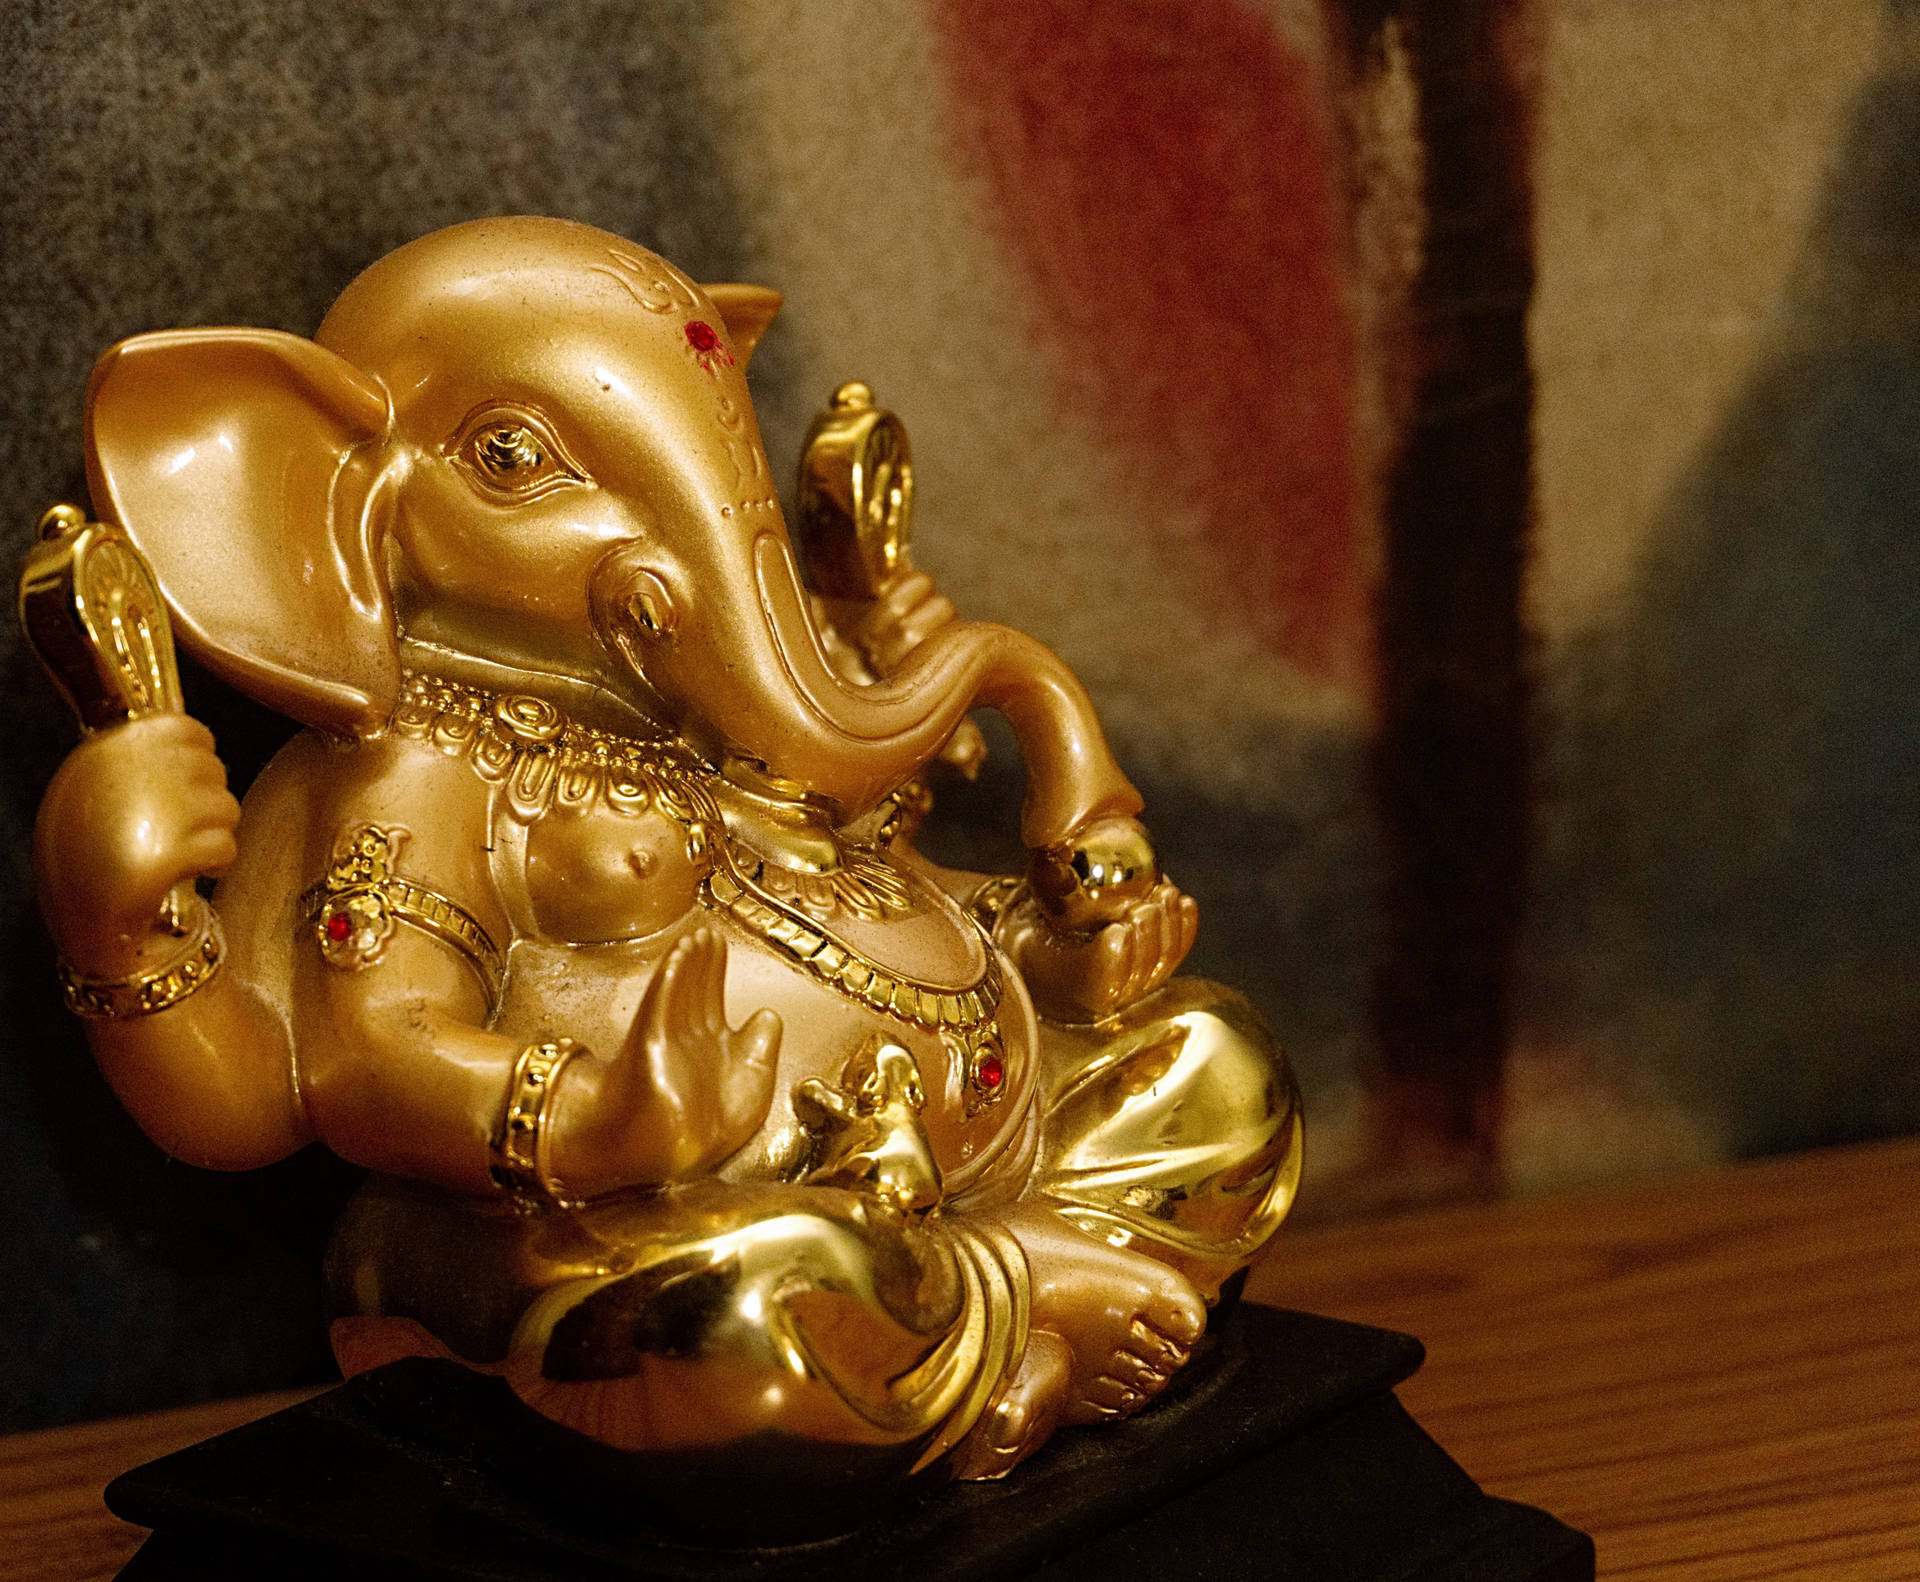 Figurinain Oro Di Ganesh In Alta Definizione Full Hd. Sfondo